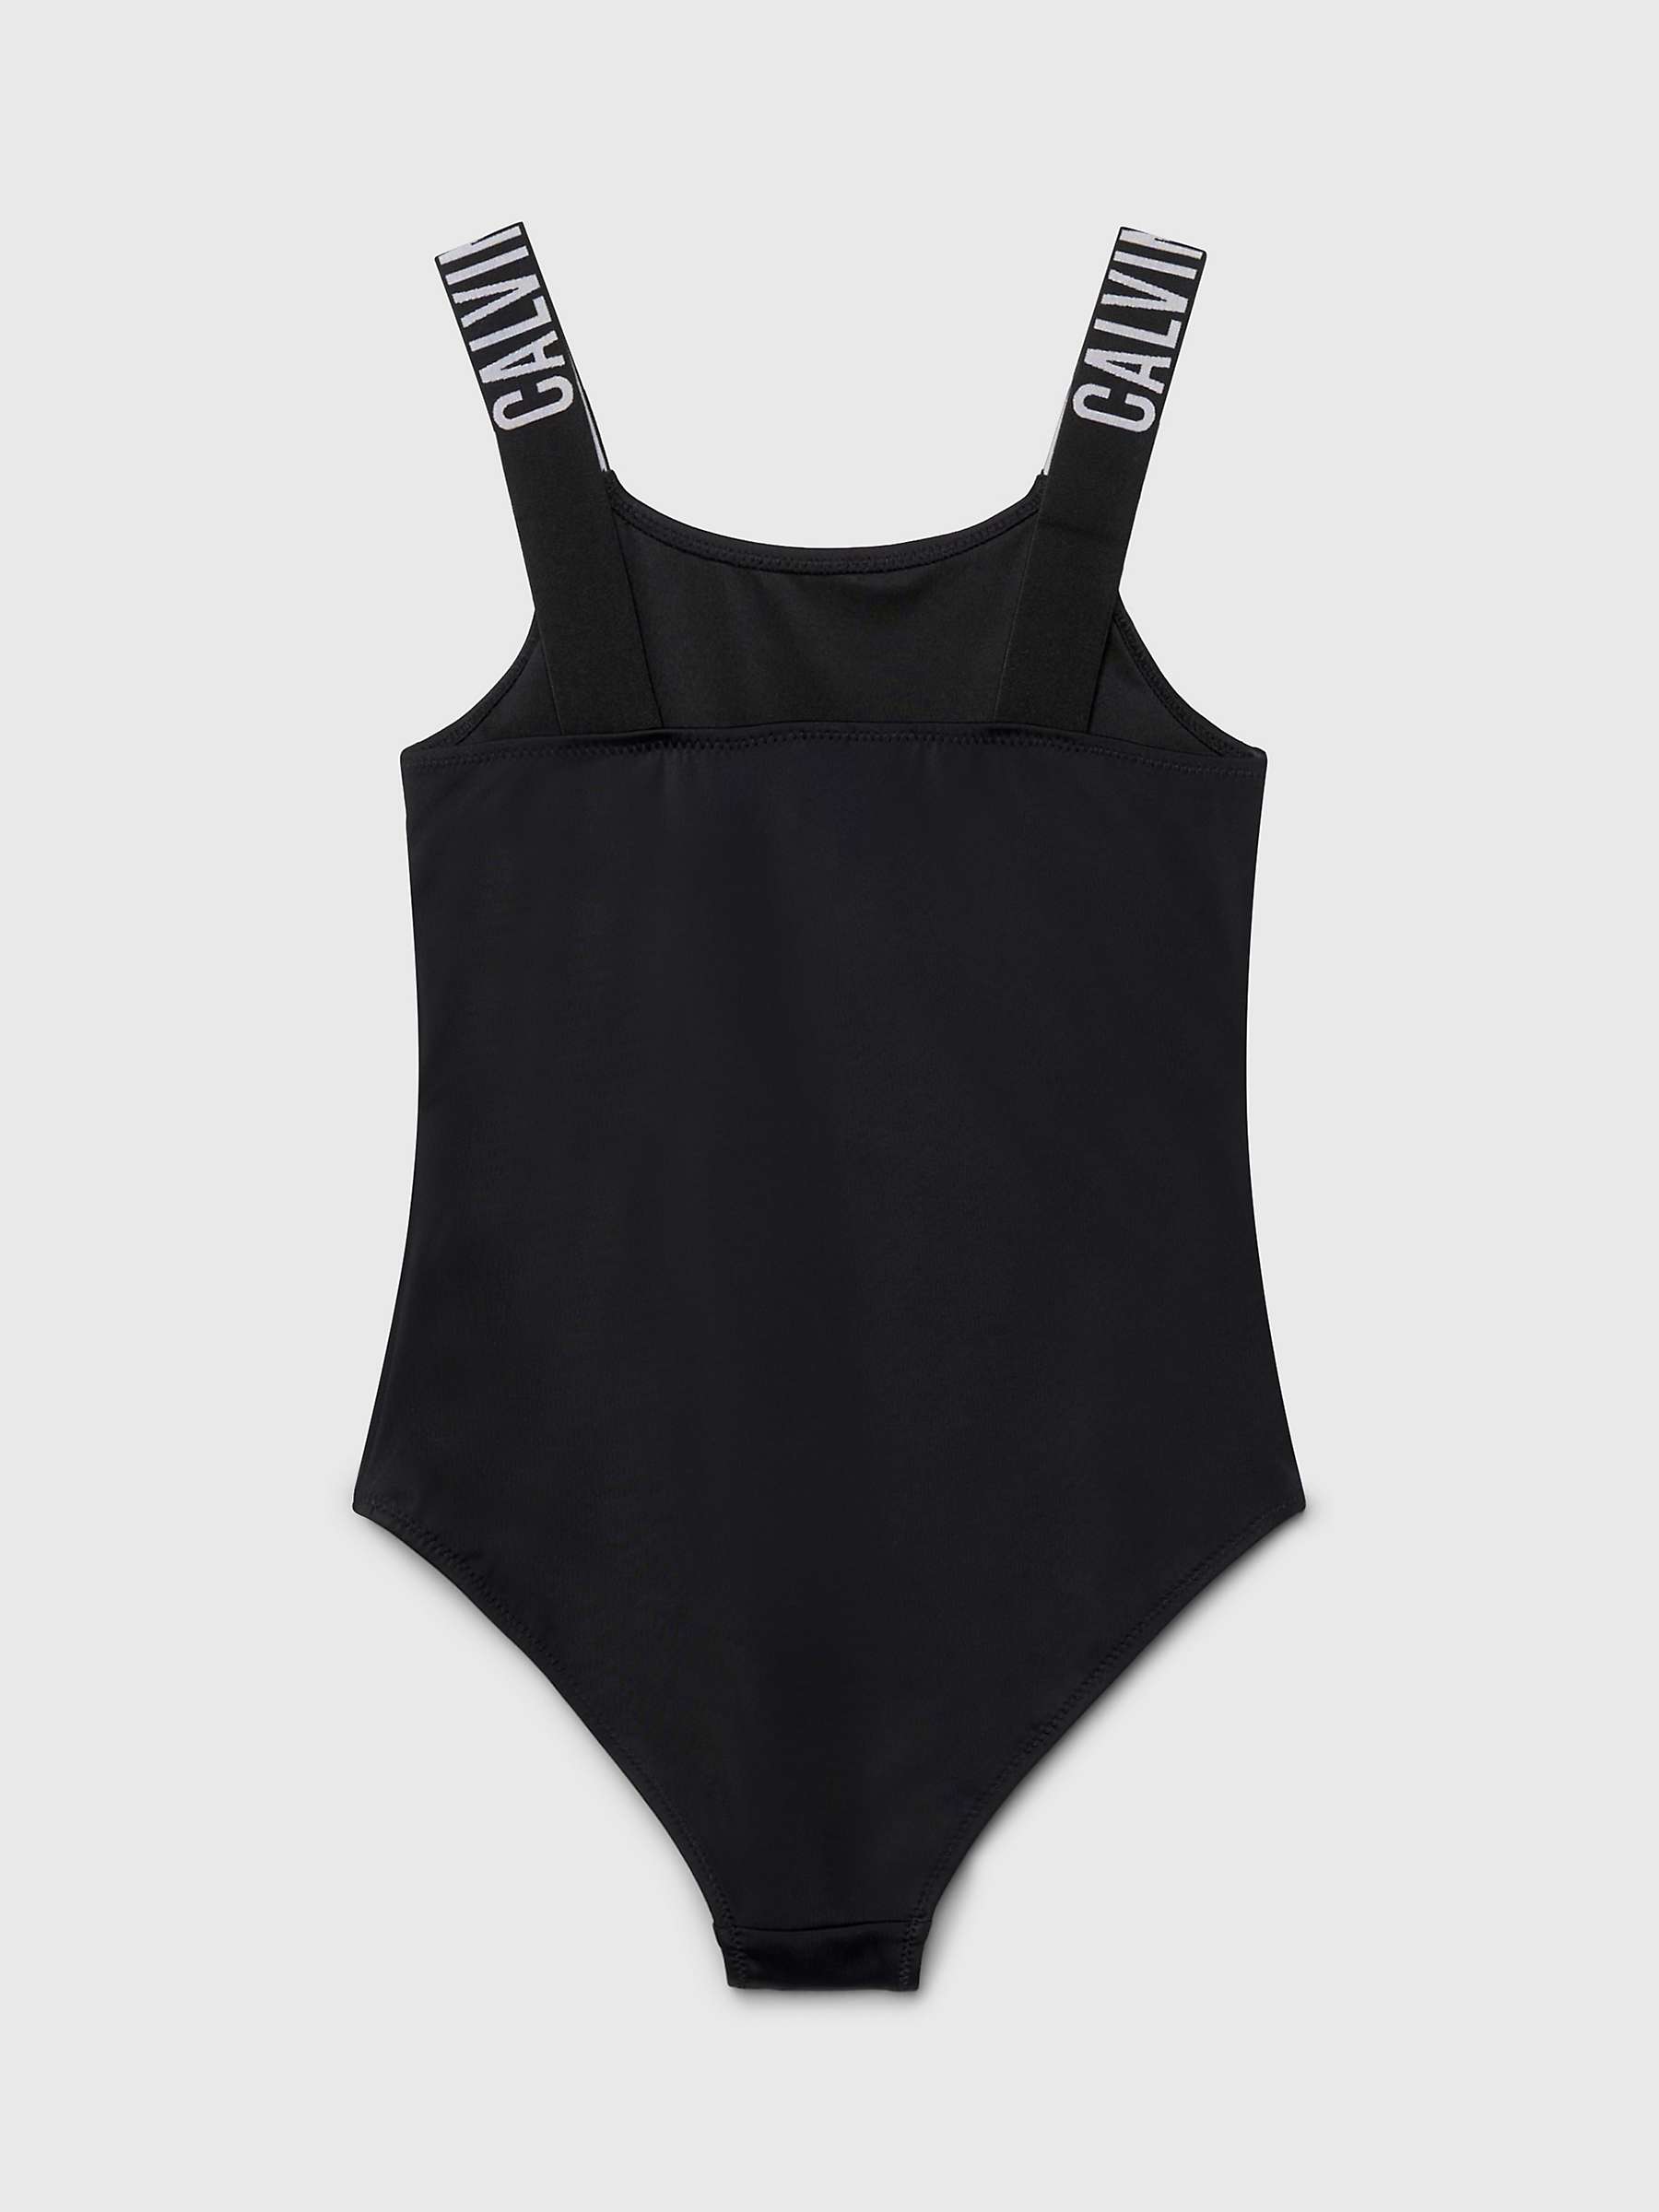 Buy Calvin Klein Kids' Logo Swimsuit, Pvh Black Online at johnlewis.com